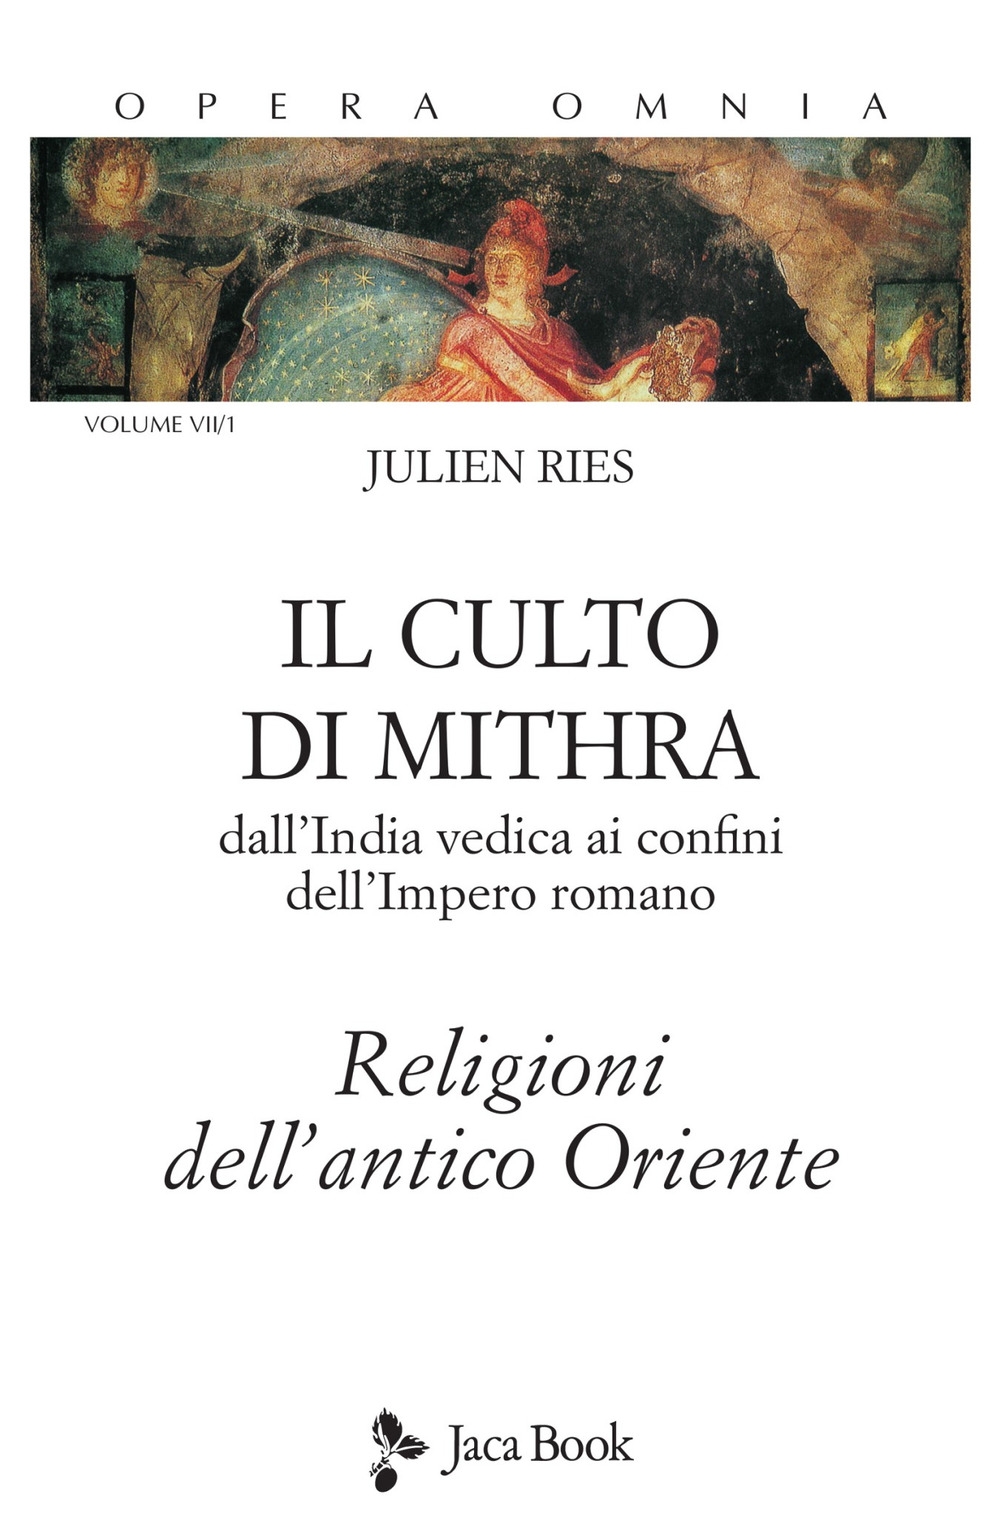 Libri Ries Julien - Opera Omnia Vol 7/1 NUOVO SIGILLATO, EDIZIONE DEL 09/09/2021 SUBITO DISPONIBILE